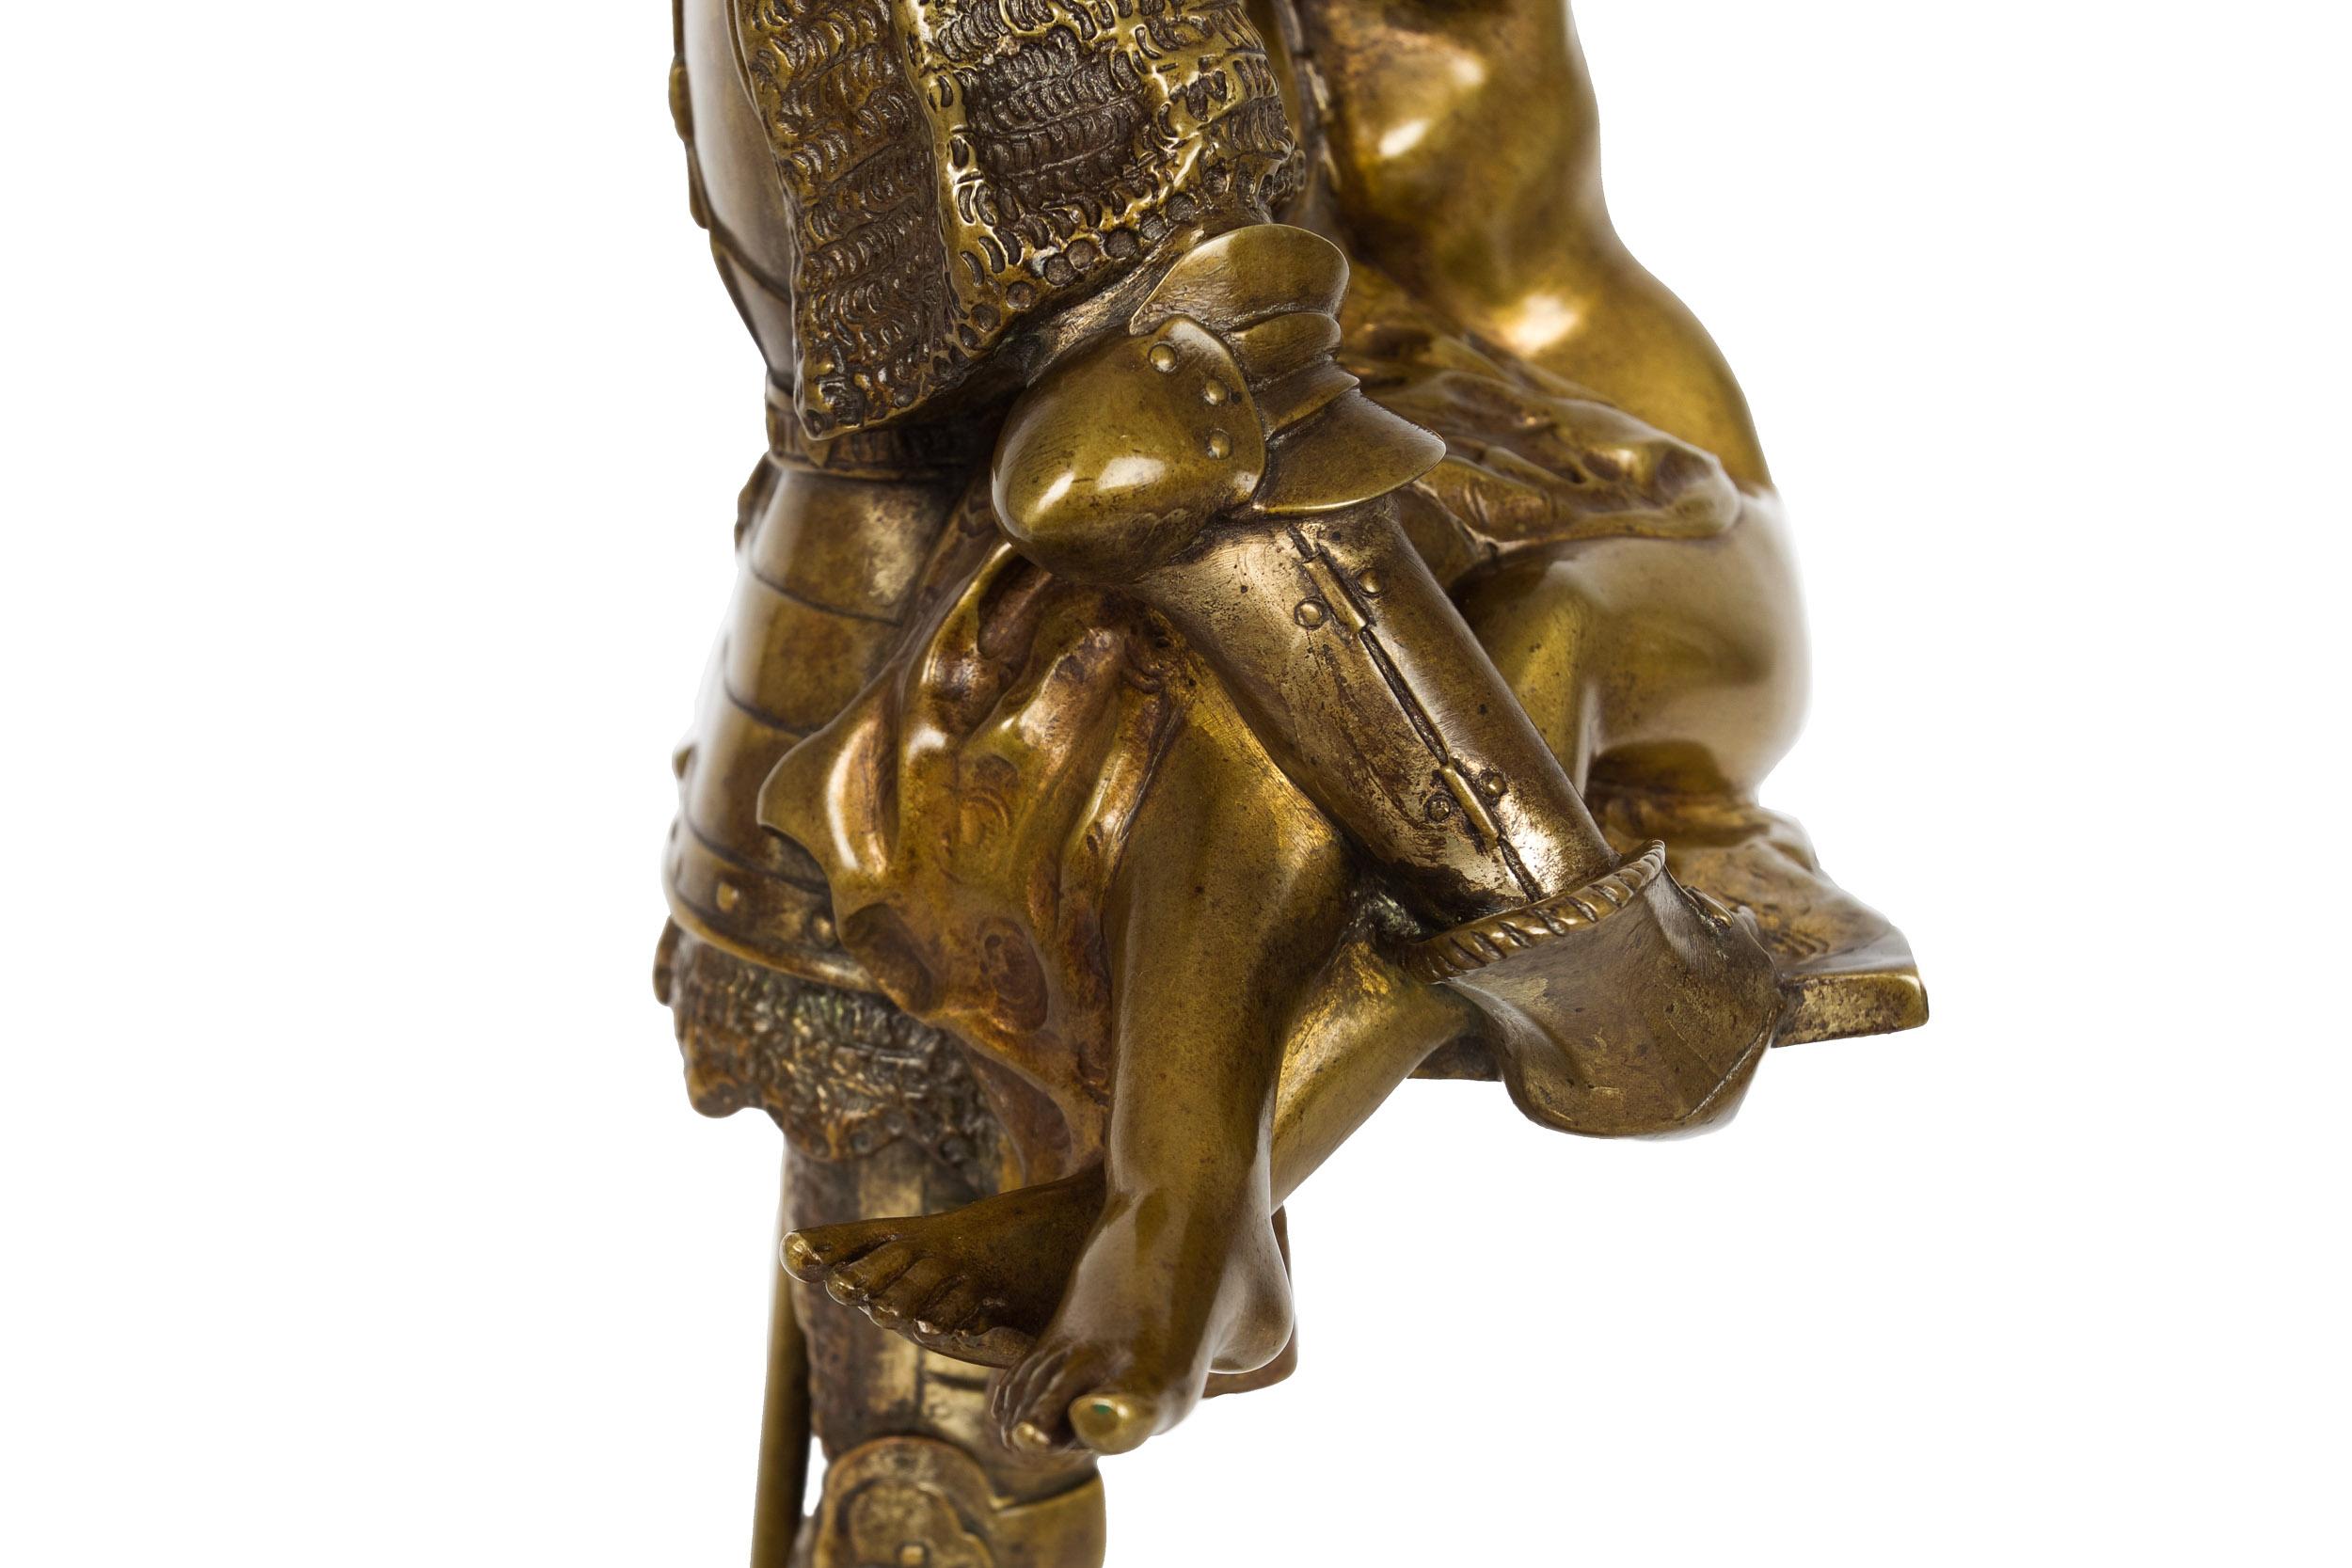 French Antique Art Nouveau Bronze Sculpture of Knight by François A. Clémencin For Sale 11